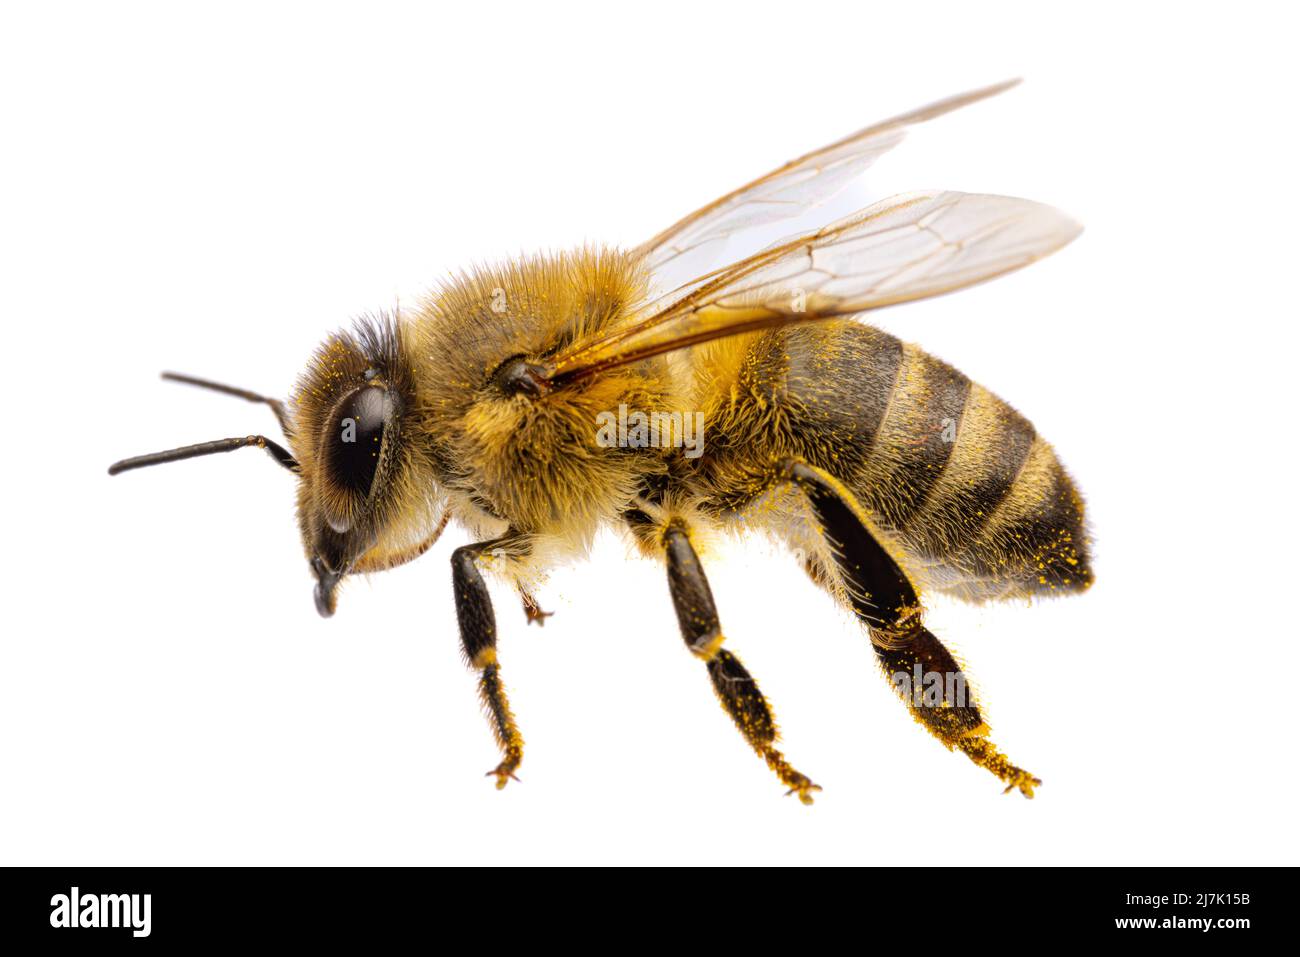 Insectes d'europe - abeilles: Vue latérale macro de l'abeille occidentale ( APIs mellifera) isolé sur fond blanc avec des ailes crapées Banque D'Images